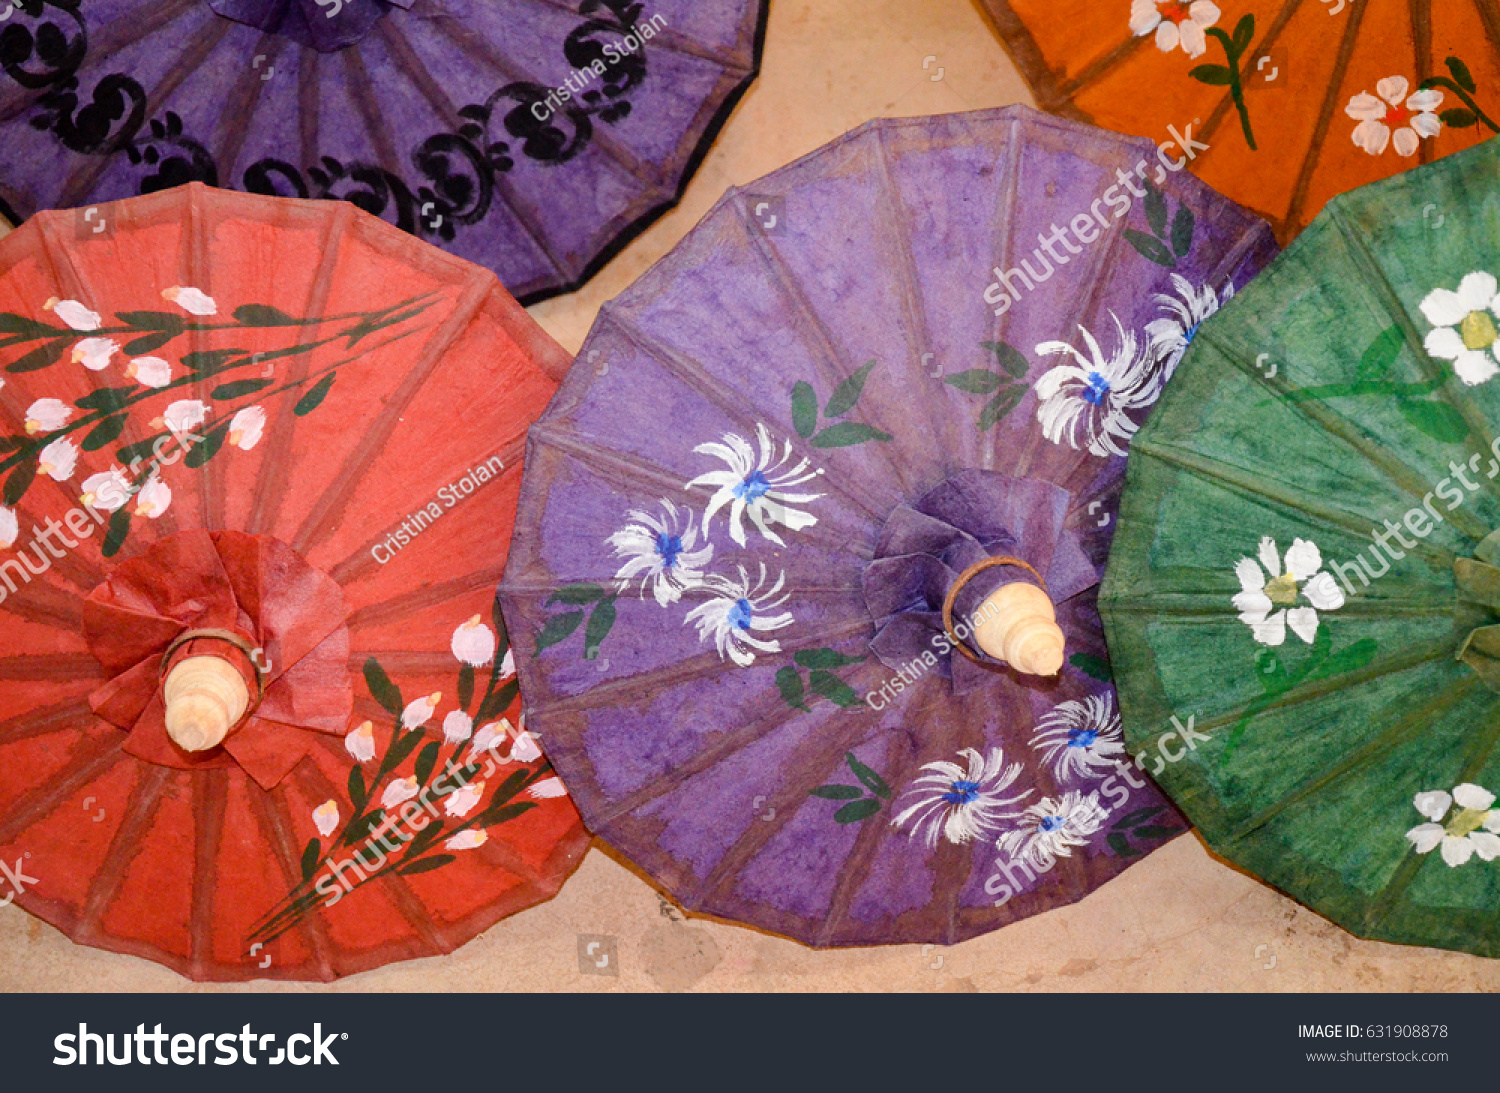 paper umbrellas for sale